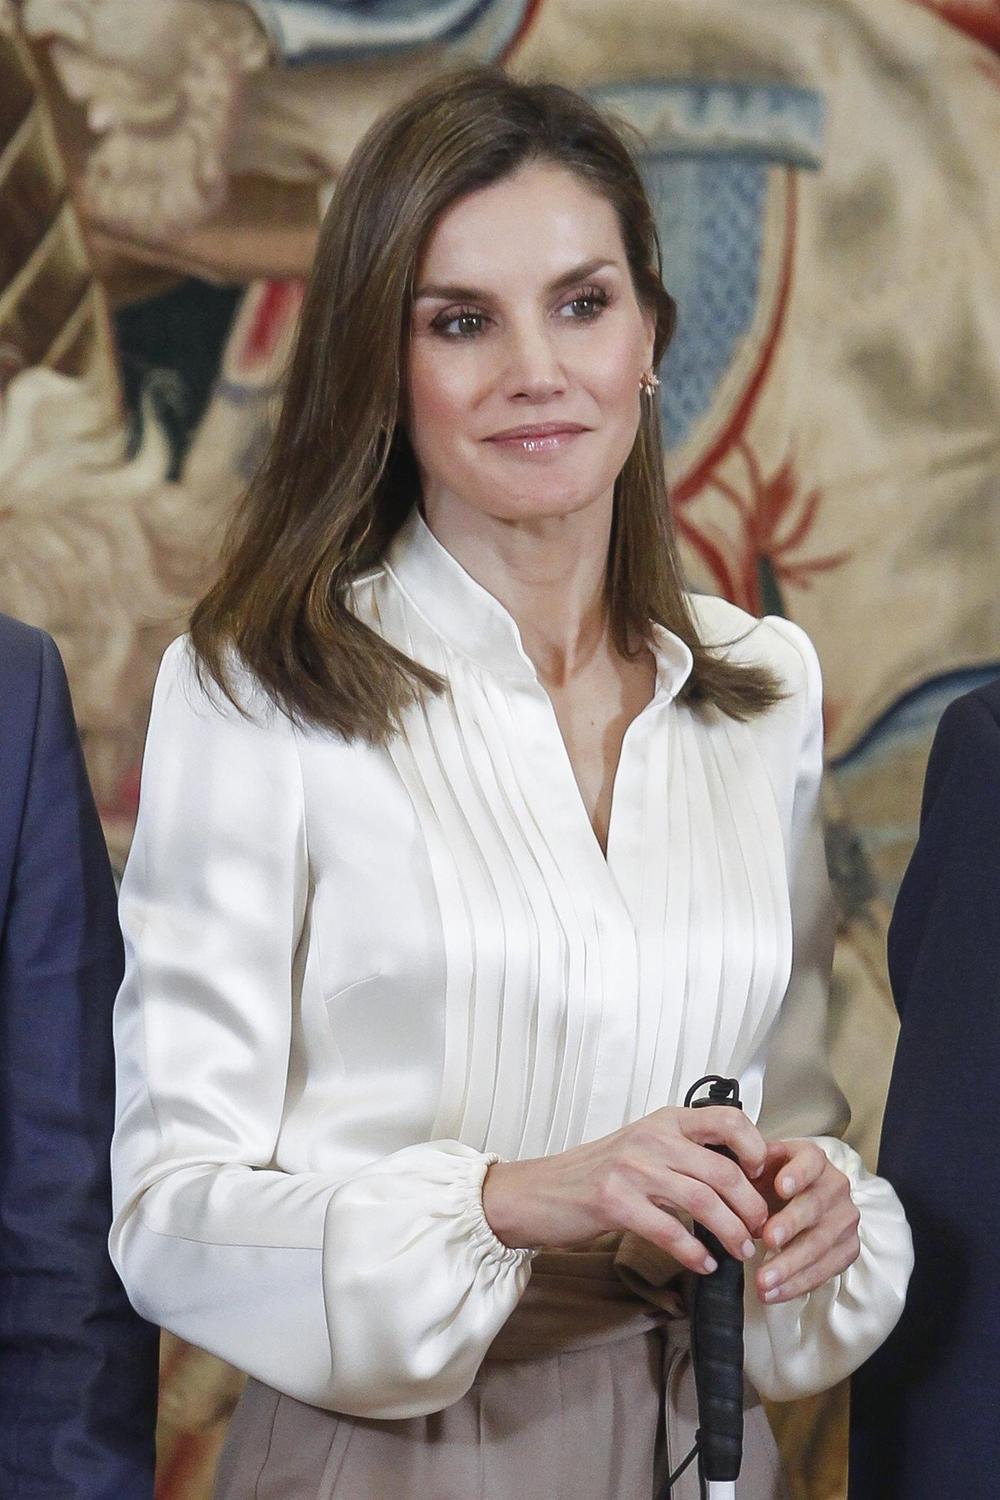 <p>Supruga<strong> kralja Felipea</strong> pokazala je poslovni stil koji ističe seksepil!</p>